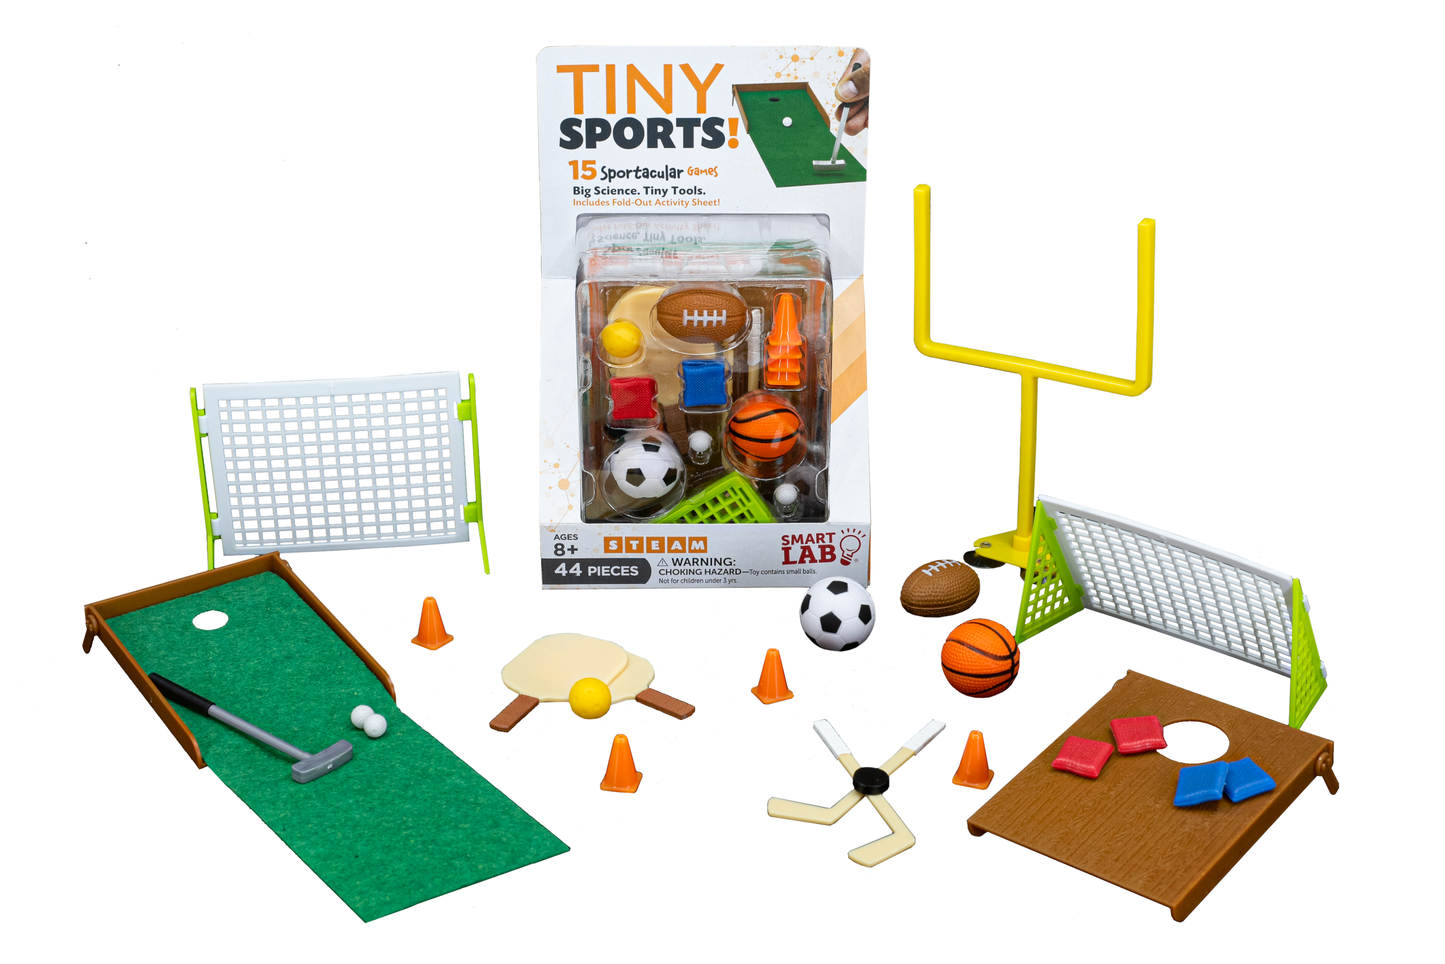 Tiny Sports!